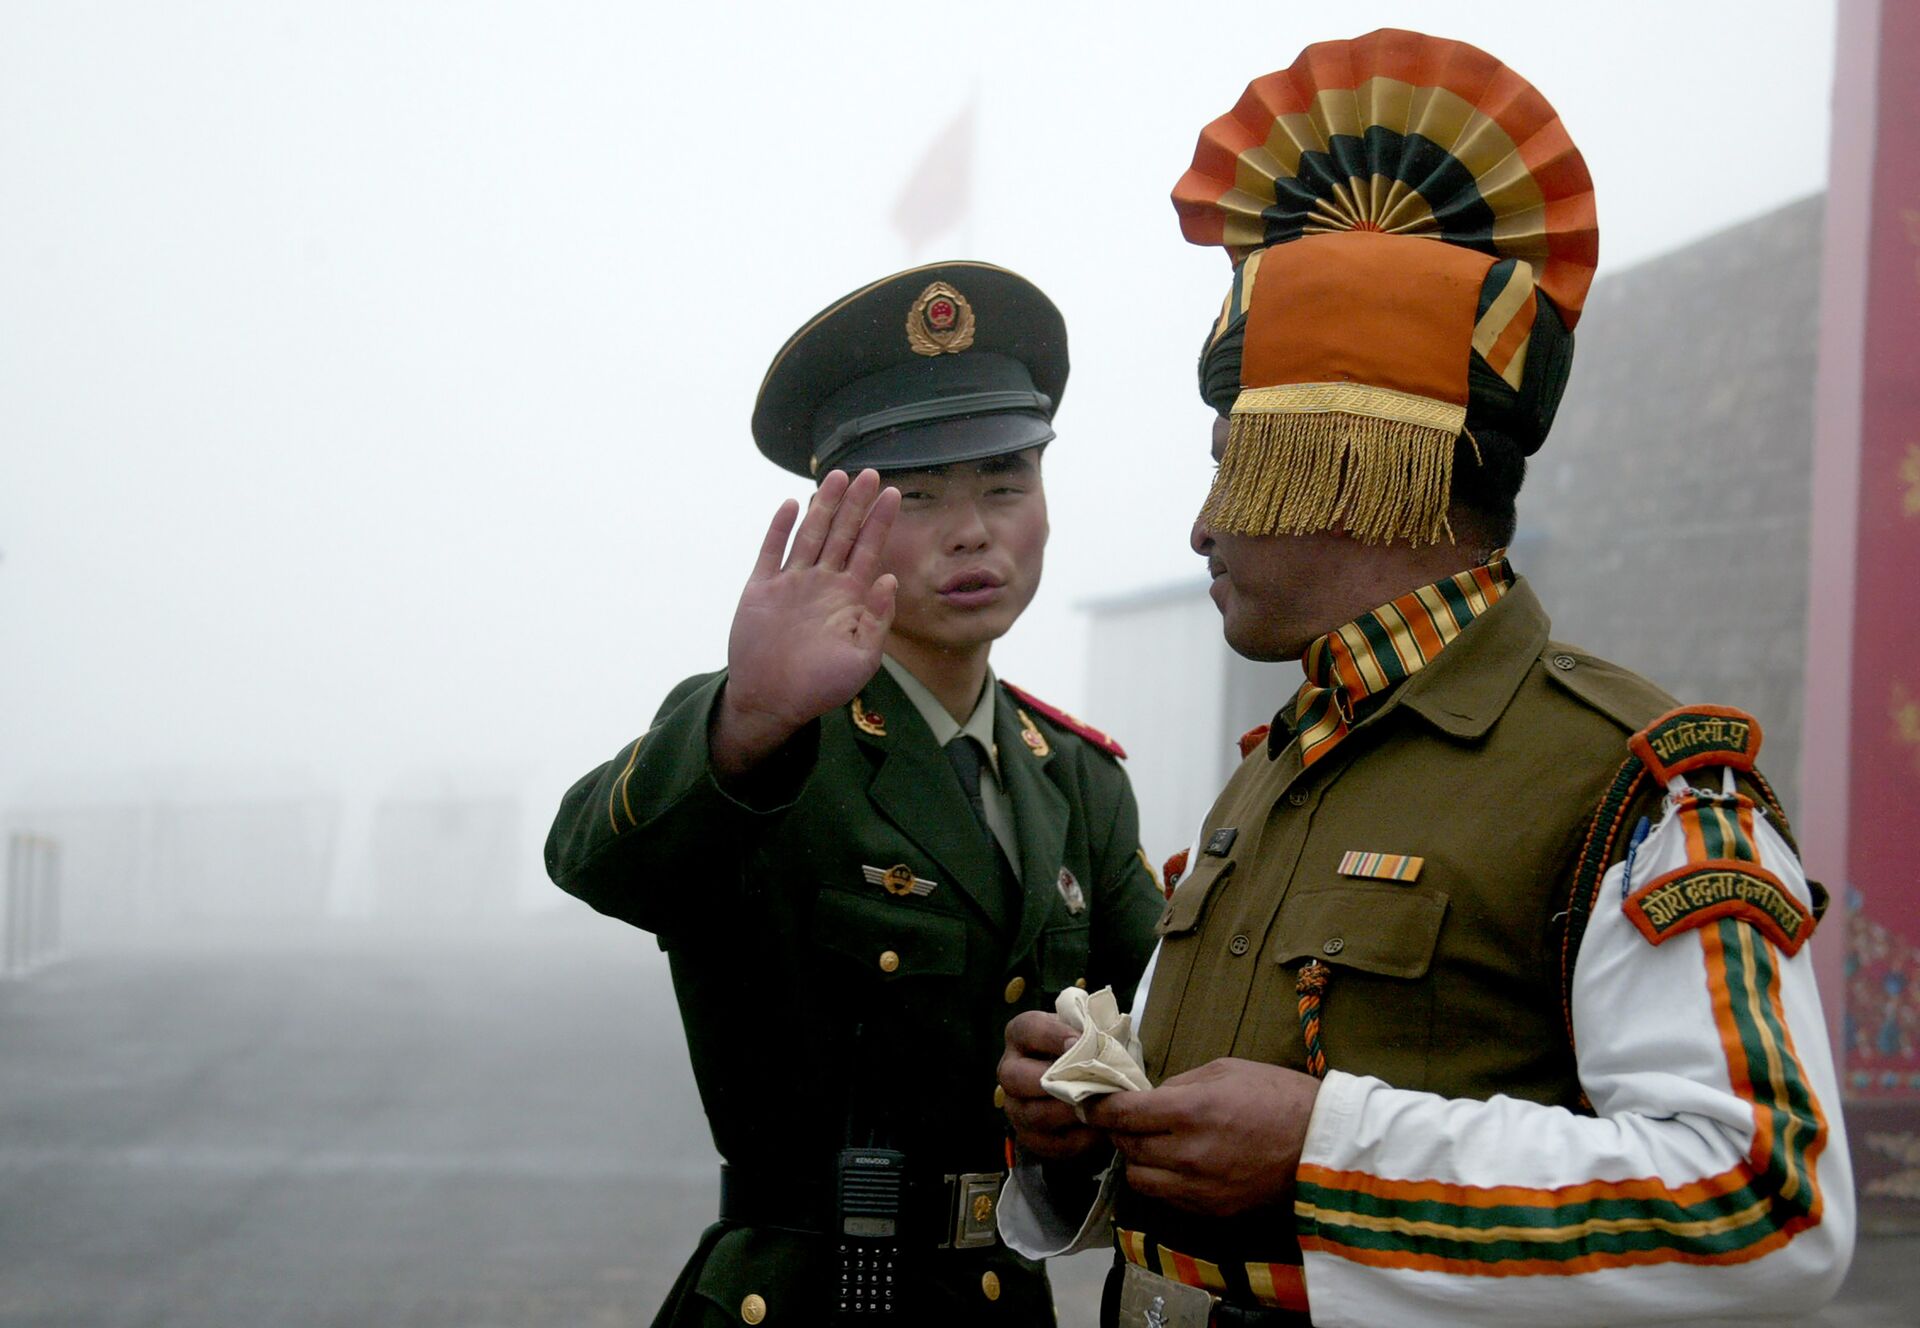 Quad do Himalaia: China está prestes a iniciar seu próprio bloco com Nepal, Paquistão e Afeganistão? - Sputnik Brasil, 1920, 17.04.2021